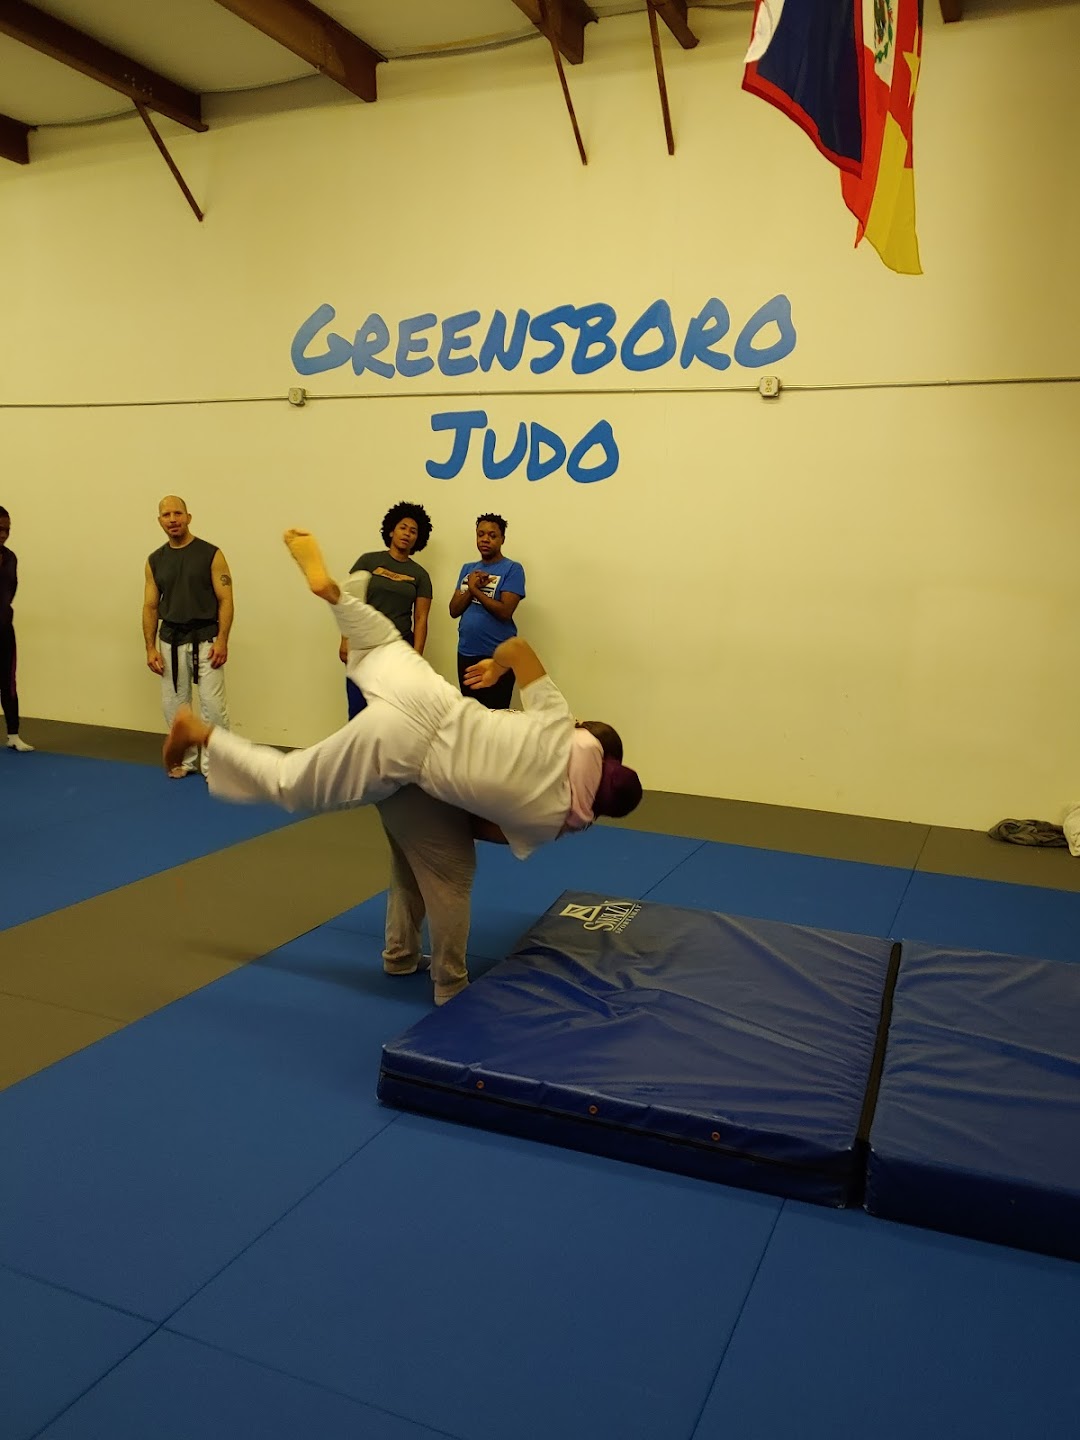 Greensboro Judo